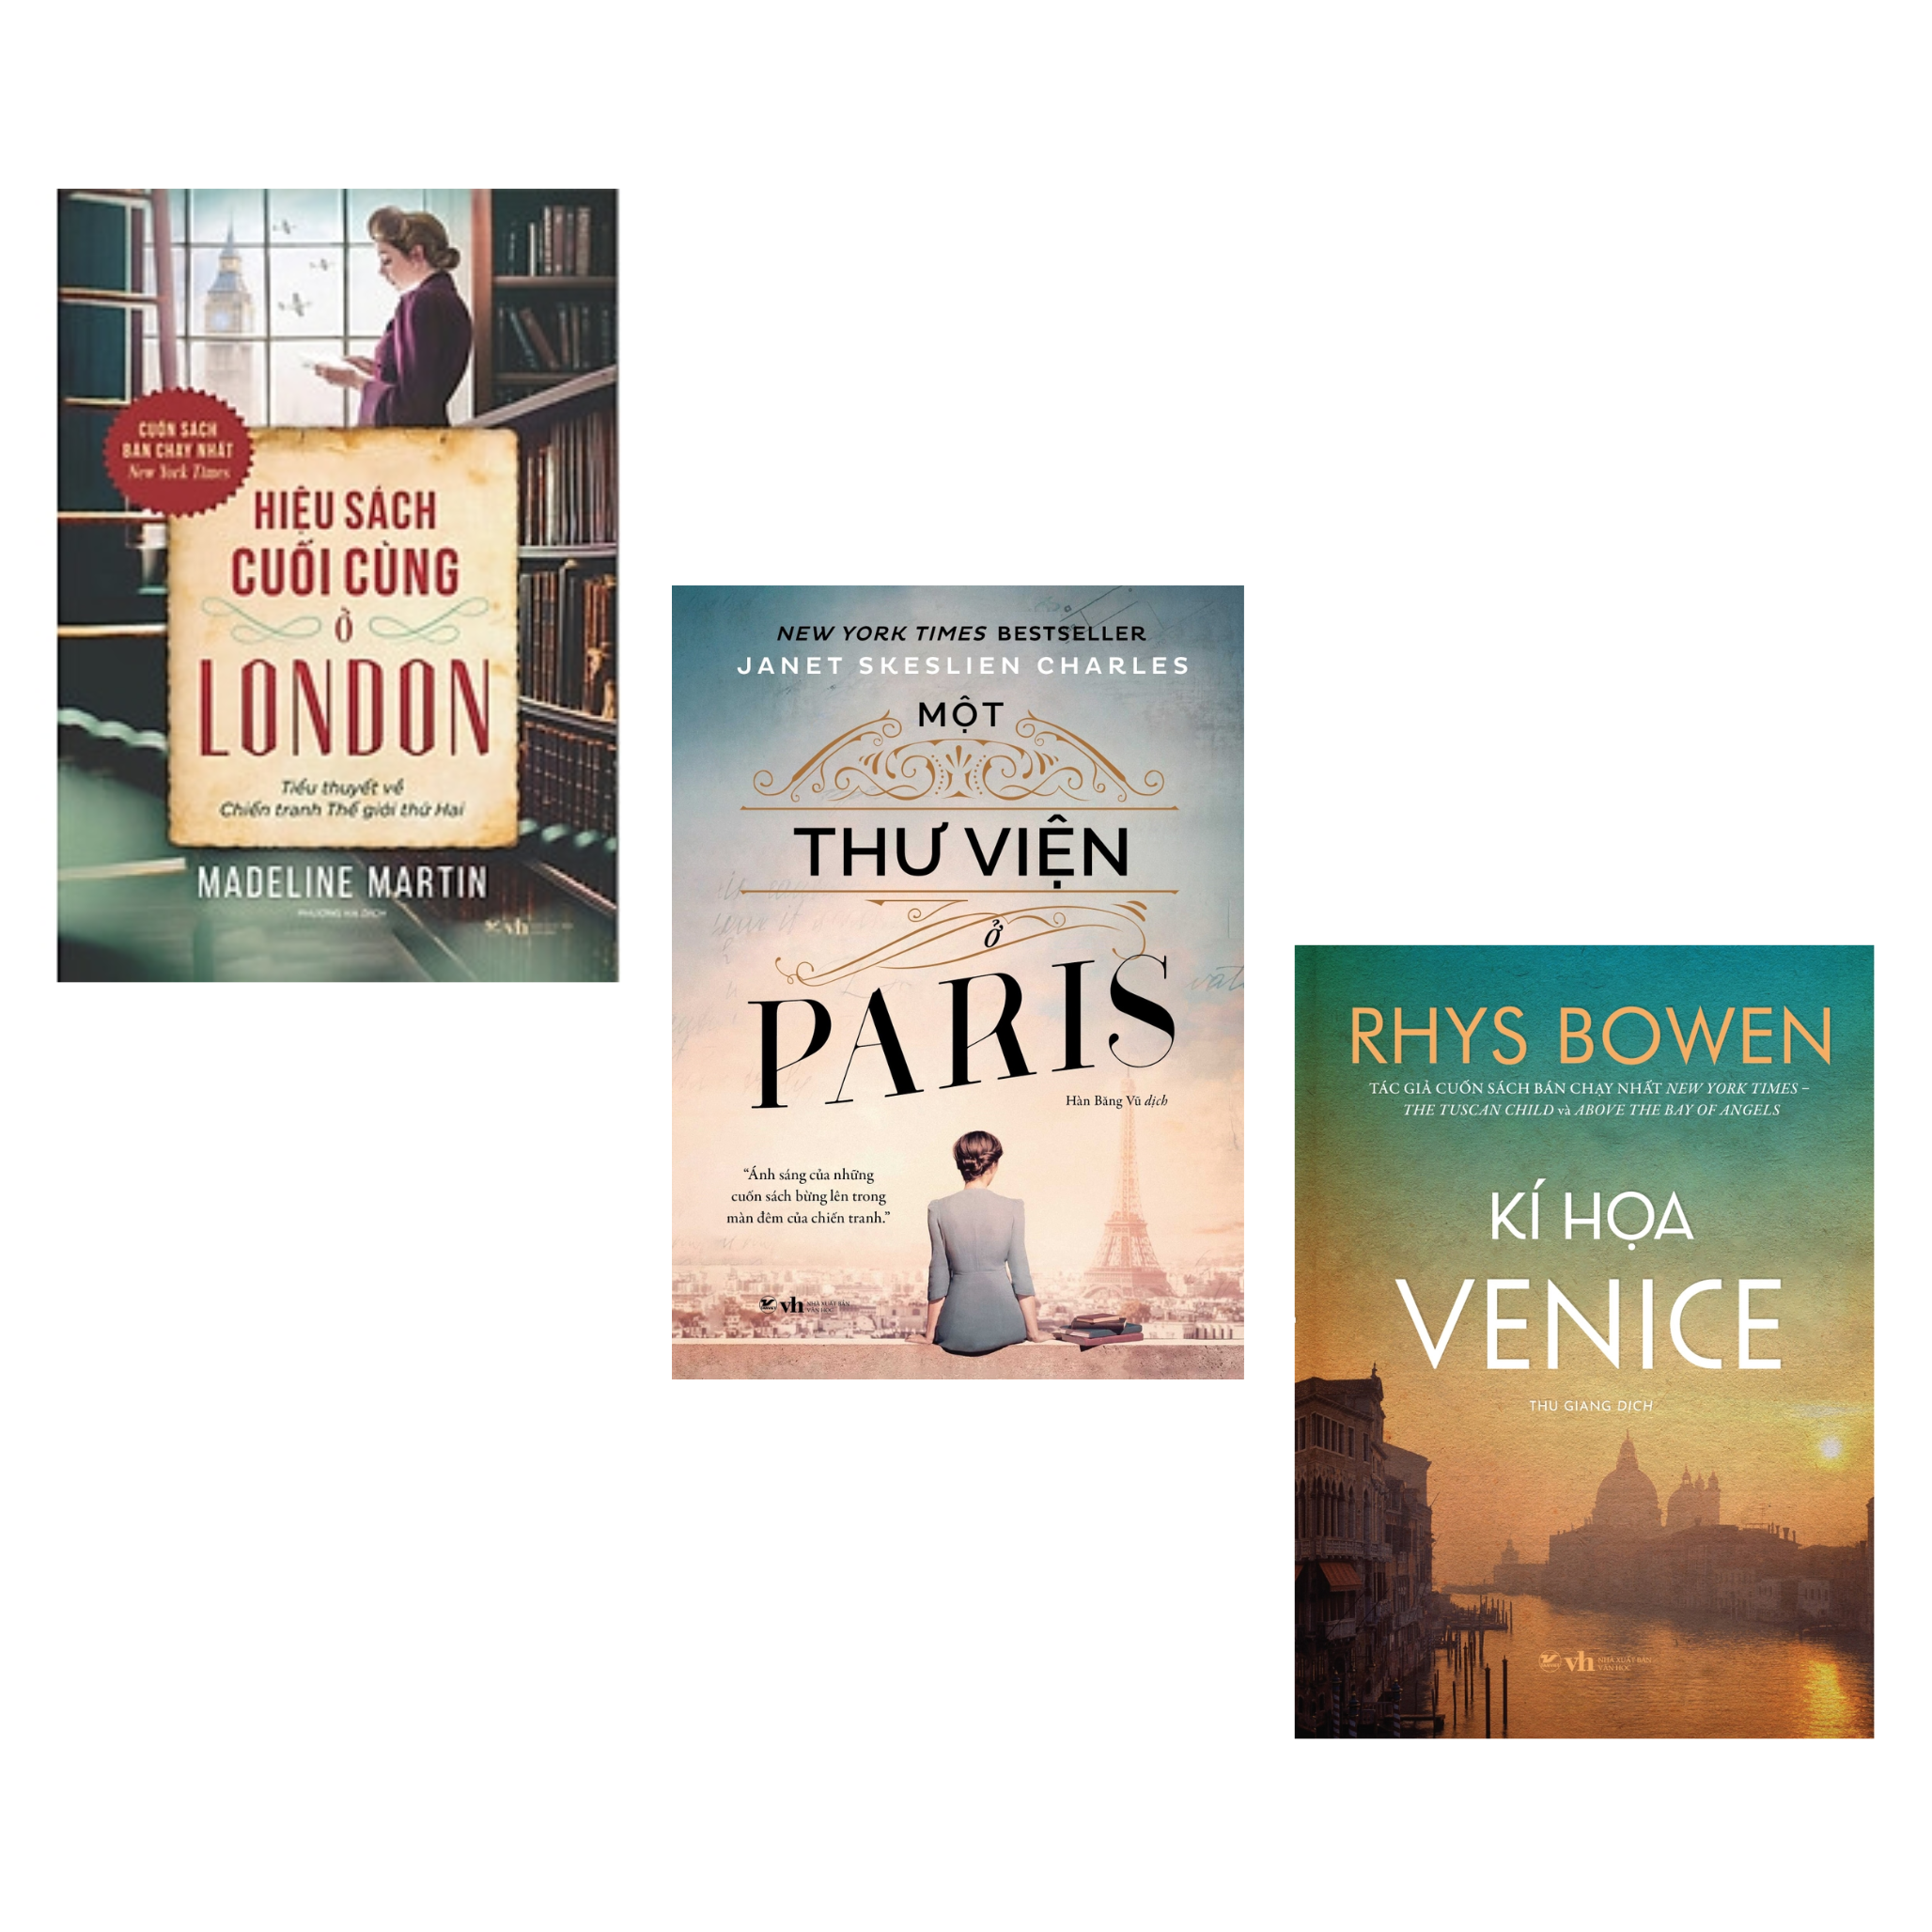 Combo 3 Cuốn Tiểu Thuyết Về Thế Chiến 2: Hiệu Sách Cuối Cùng Ở London + Một Thư Viện Ở Paris + Kí Họa Venice